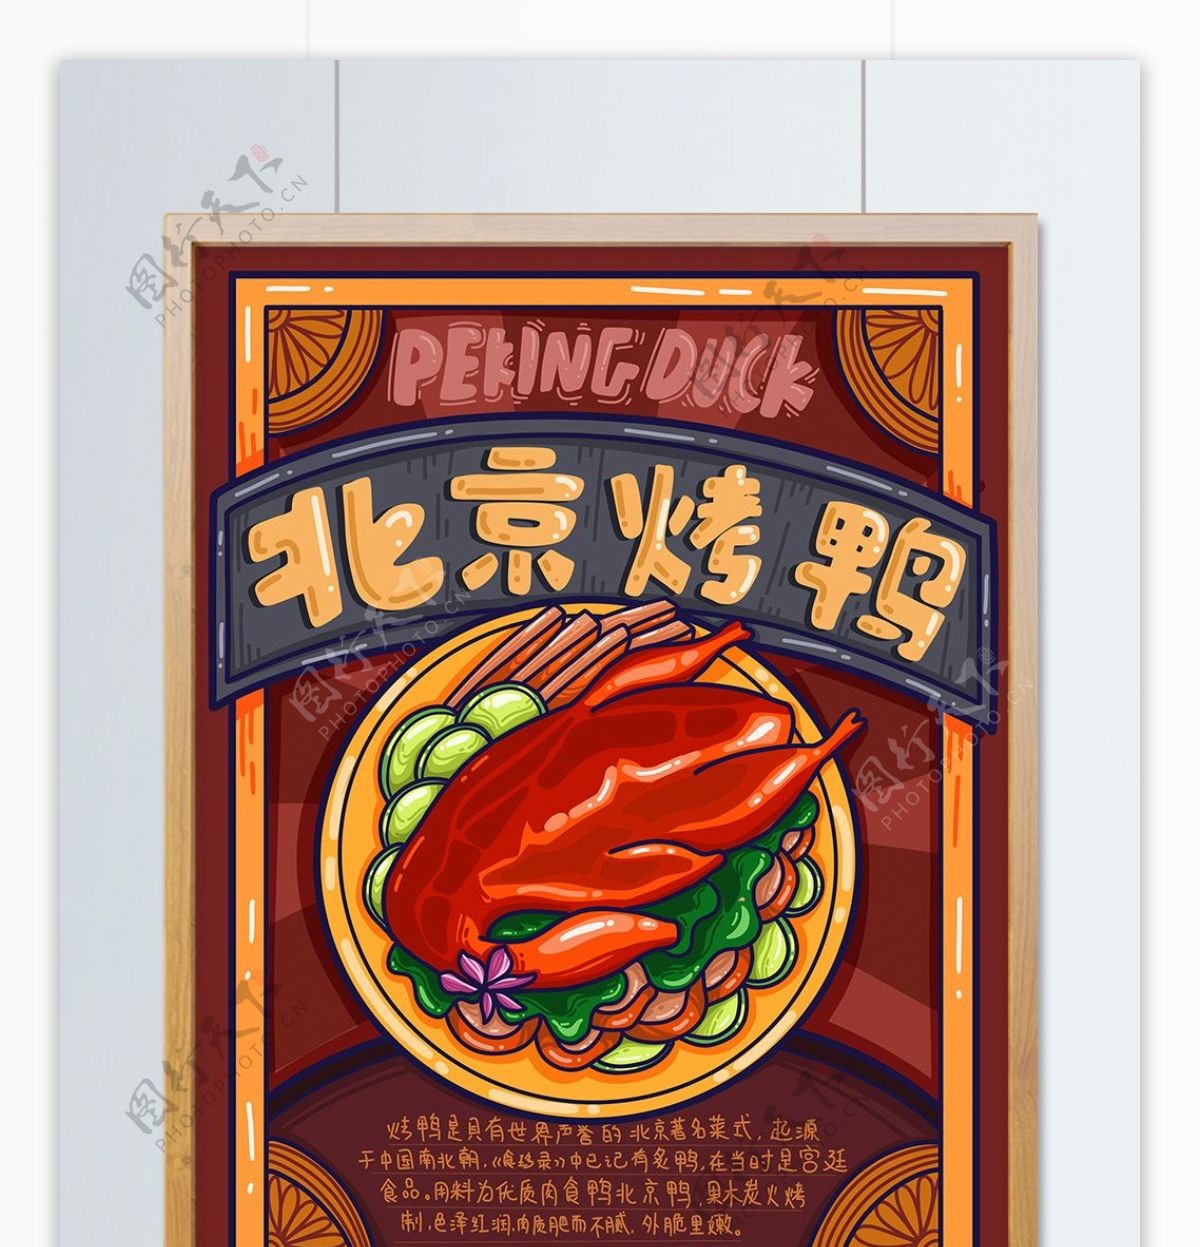 地方特色美食之北京烤鸭